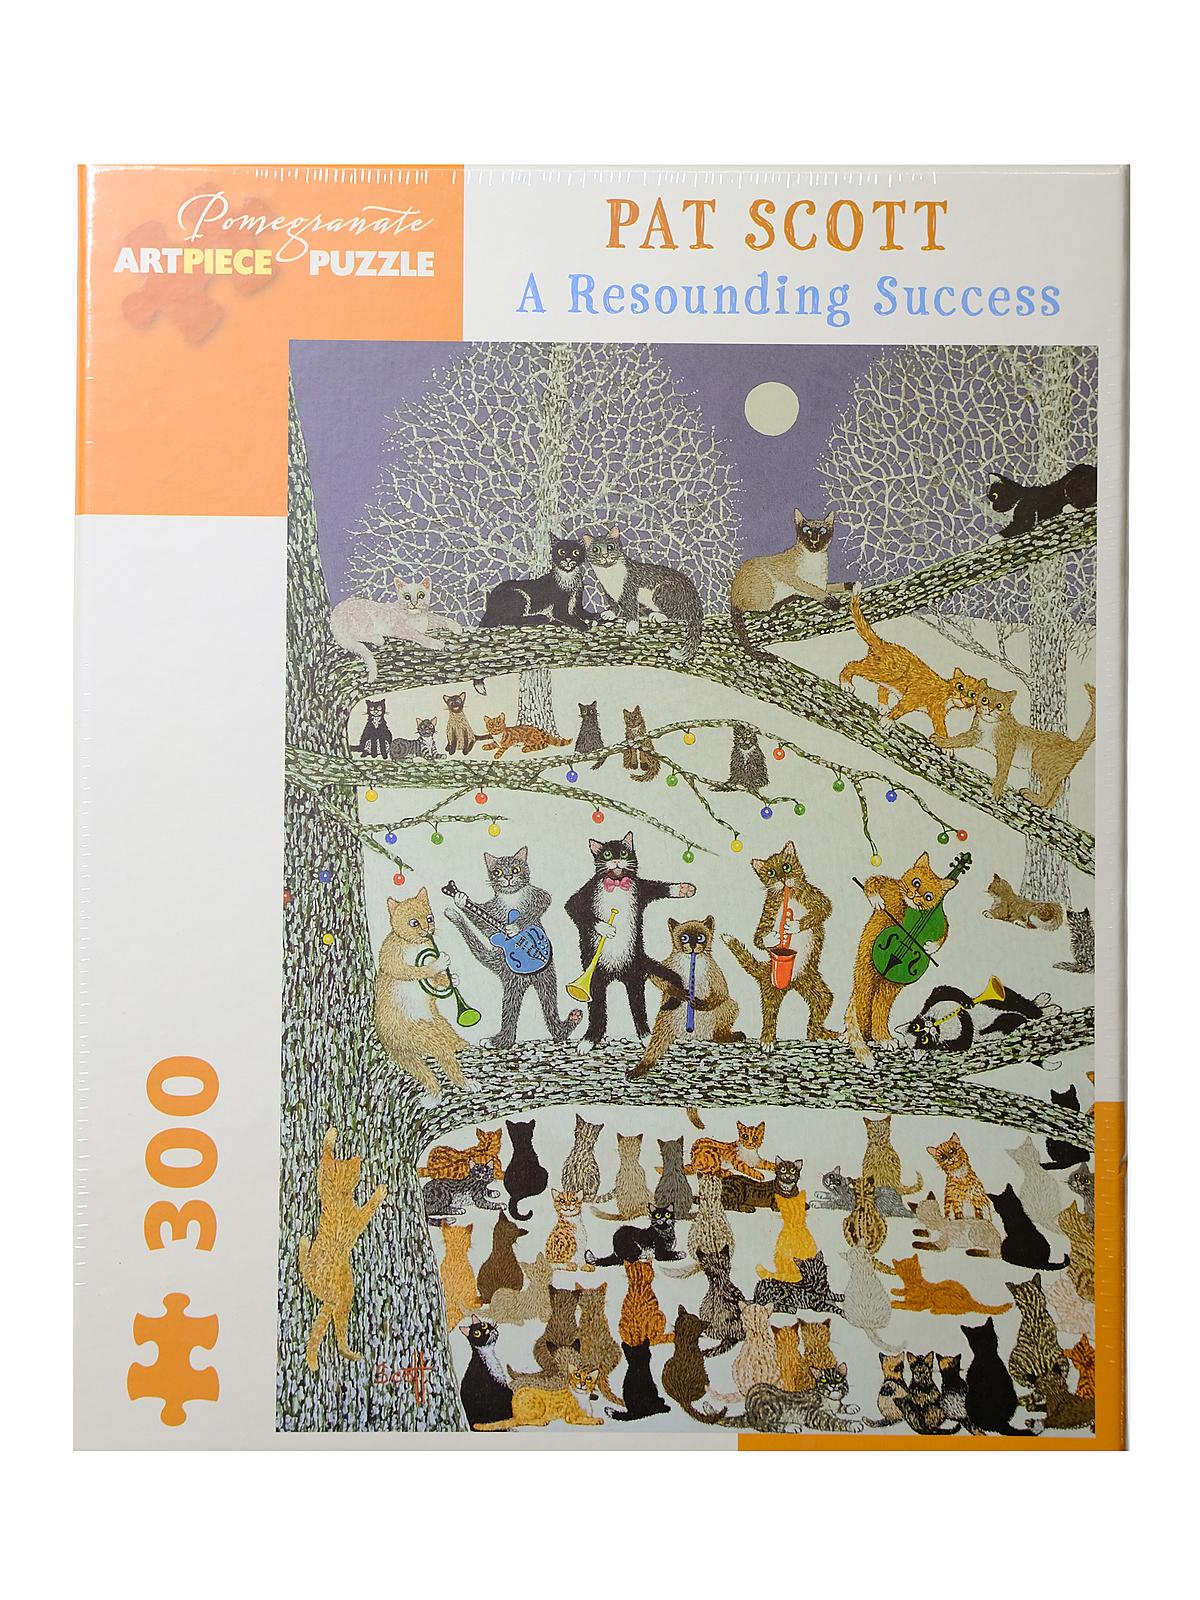 Pat Scott: A Resounding Success